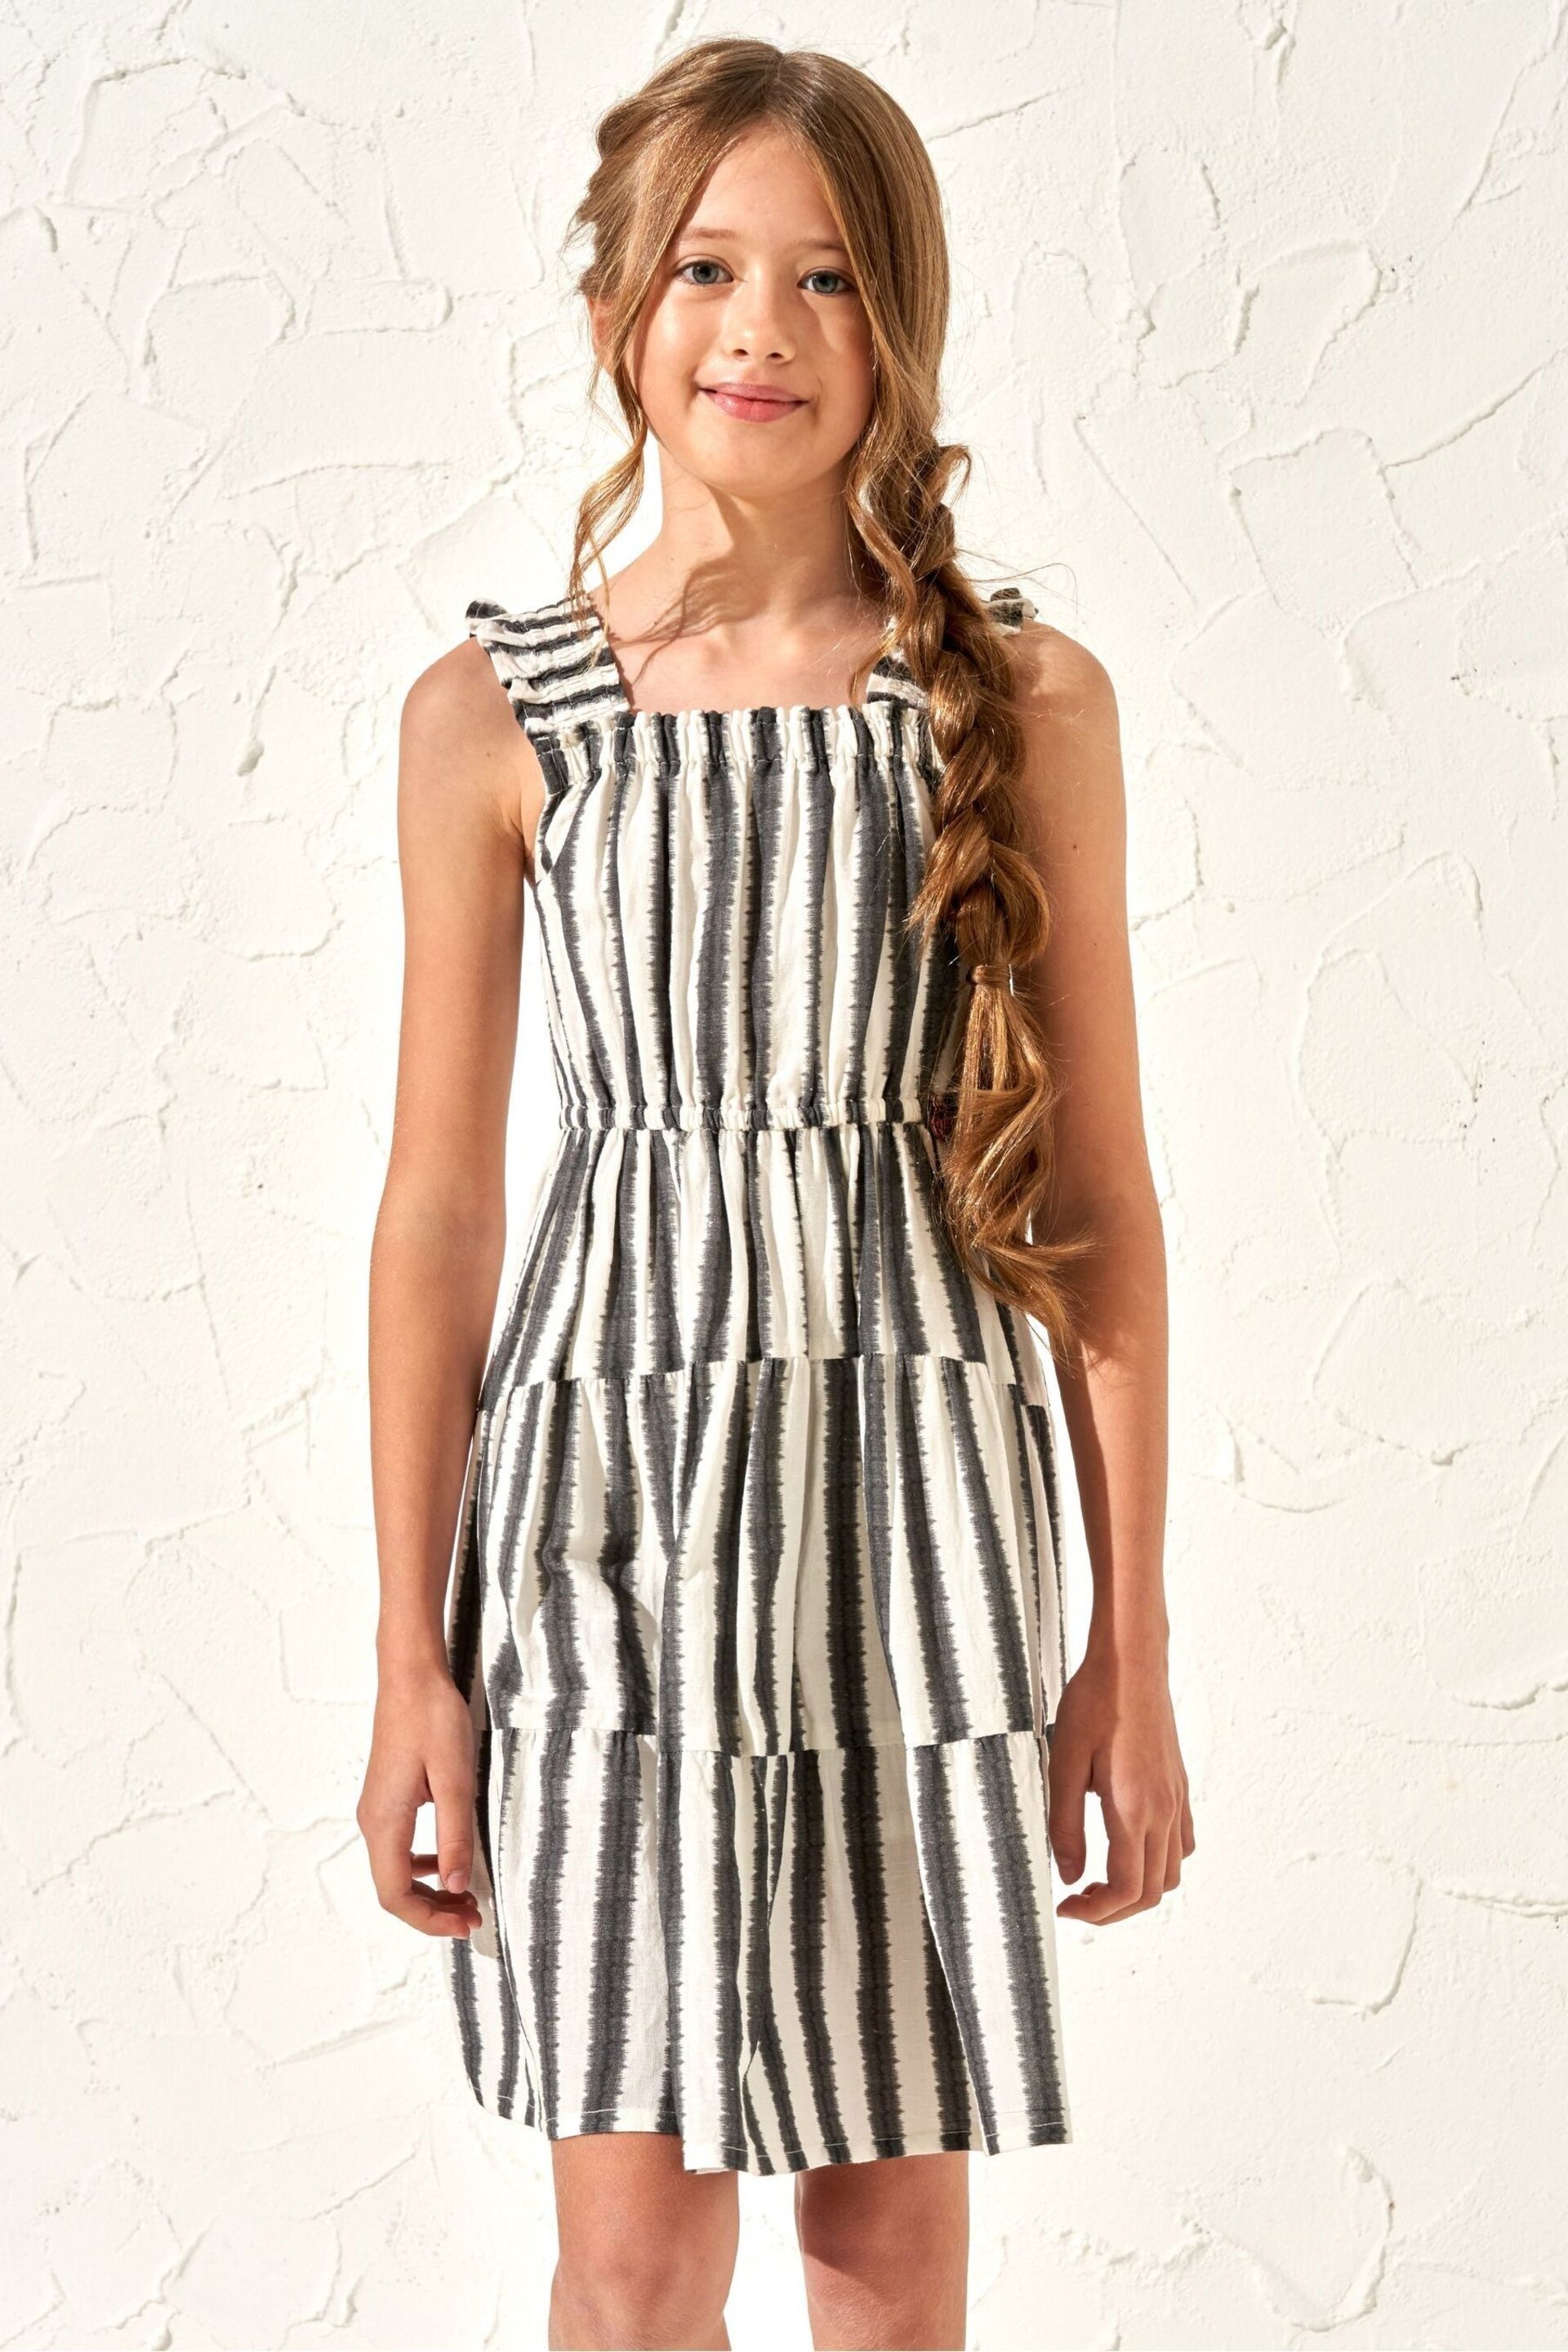 Angel & Rocket Black Stripe Etta Summer Dress - Image 1 of 5